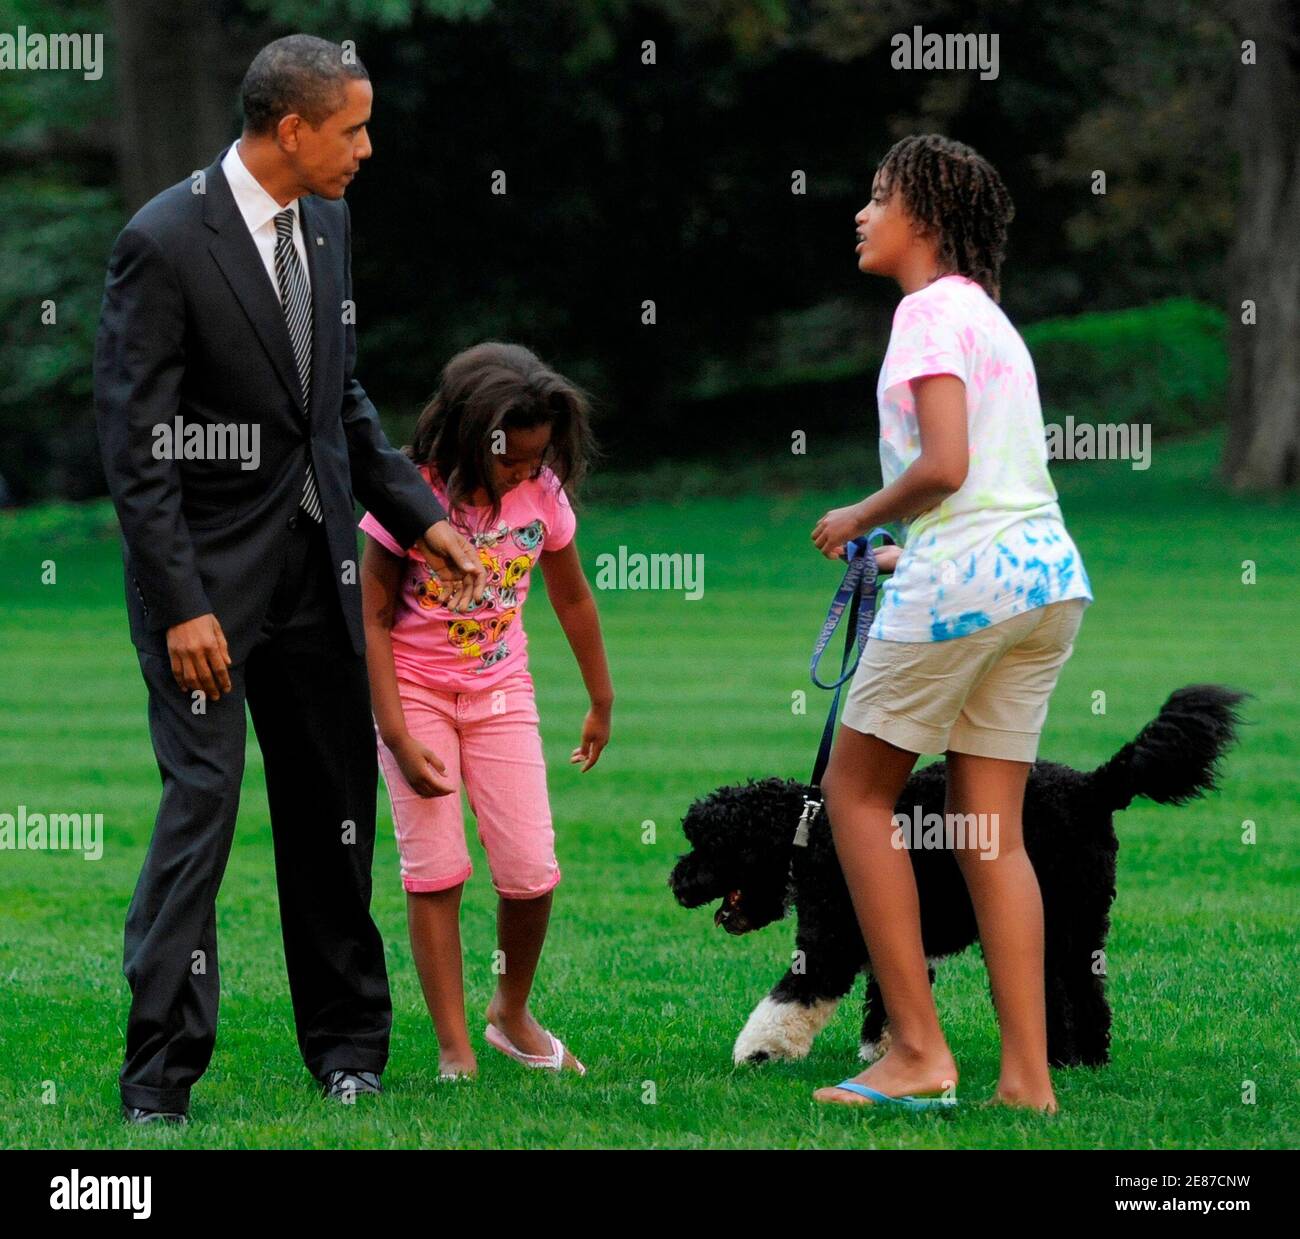 US-Präsident Barack Obama wird von seinen Töchtern Sasha (L) und Malia und ihr Hund Bo bei seiner Rückkehr nach Washington begrüßt, nach einem Ausflug zum Ohio und Pennsylvania, wo er in wirtschaftliche Rallyes, 15. September 2009 teilgenommen.   REUTERS/Mike Theiler (Vereinigte Staaten Politik) Stockfoto